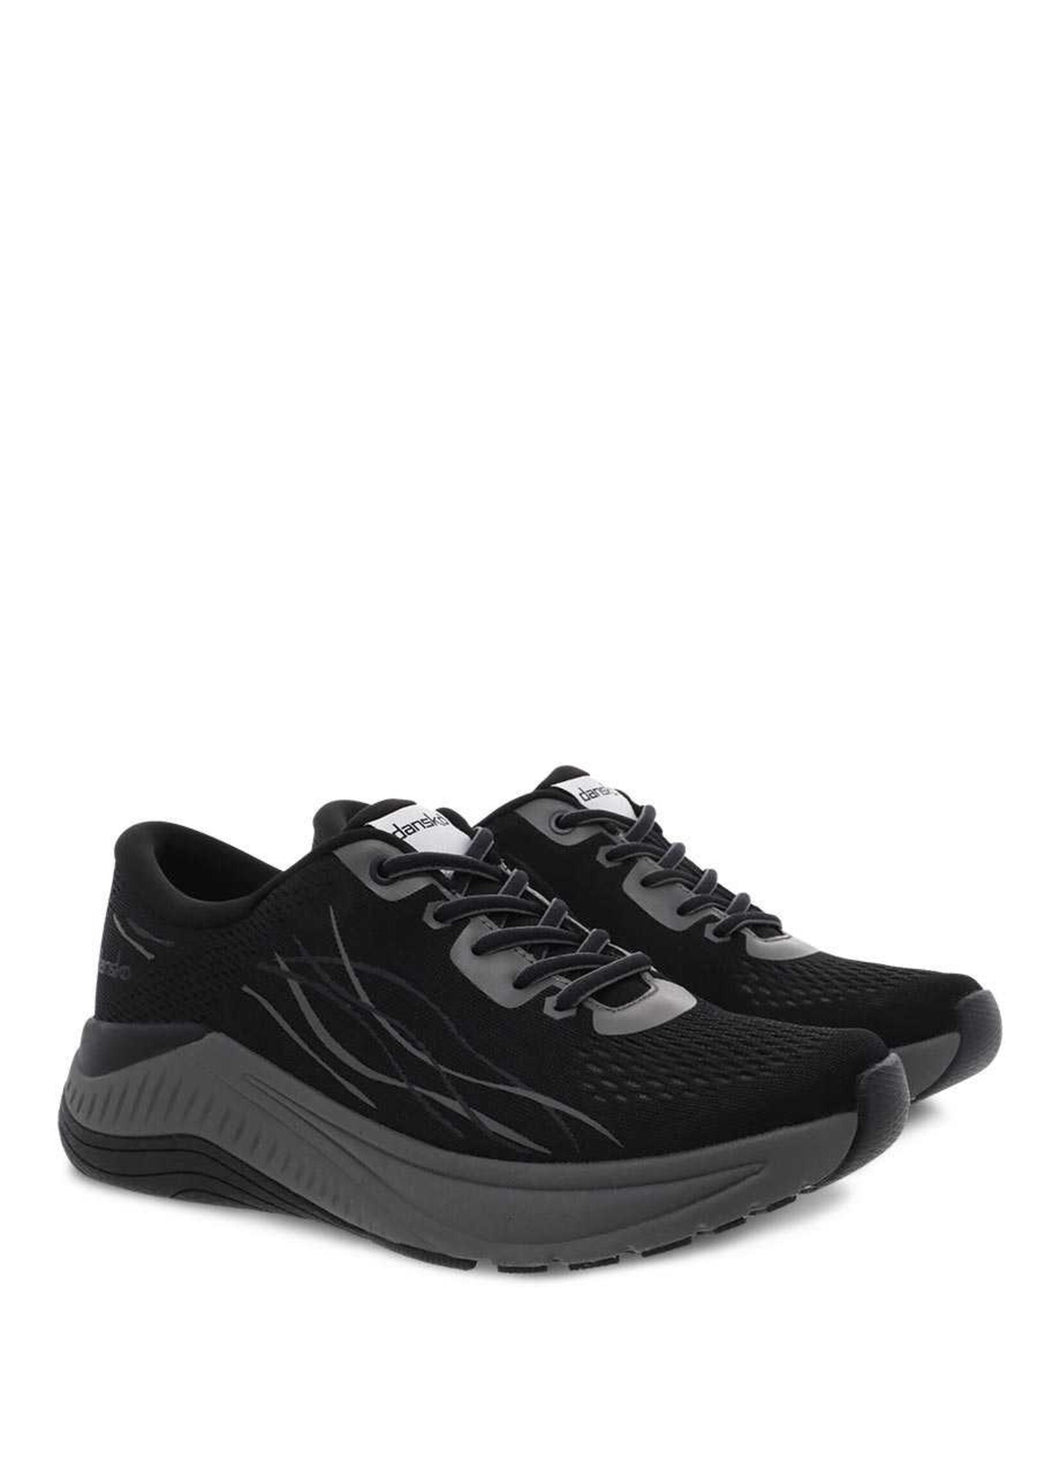 Dansko Pace Black/Grey Walking Shoe SHOES DANSKO 36W Black/Grey 